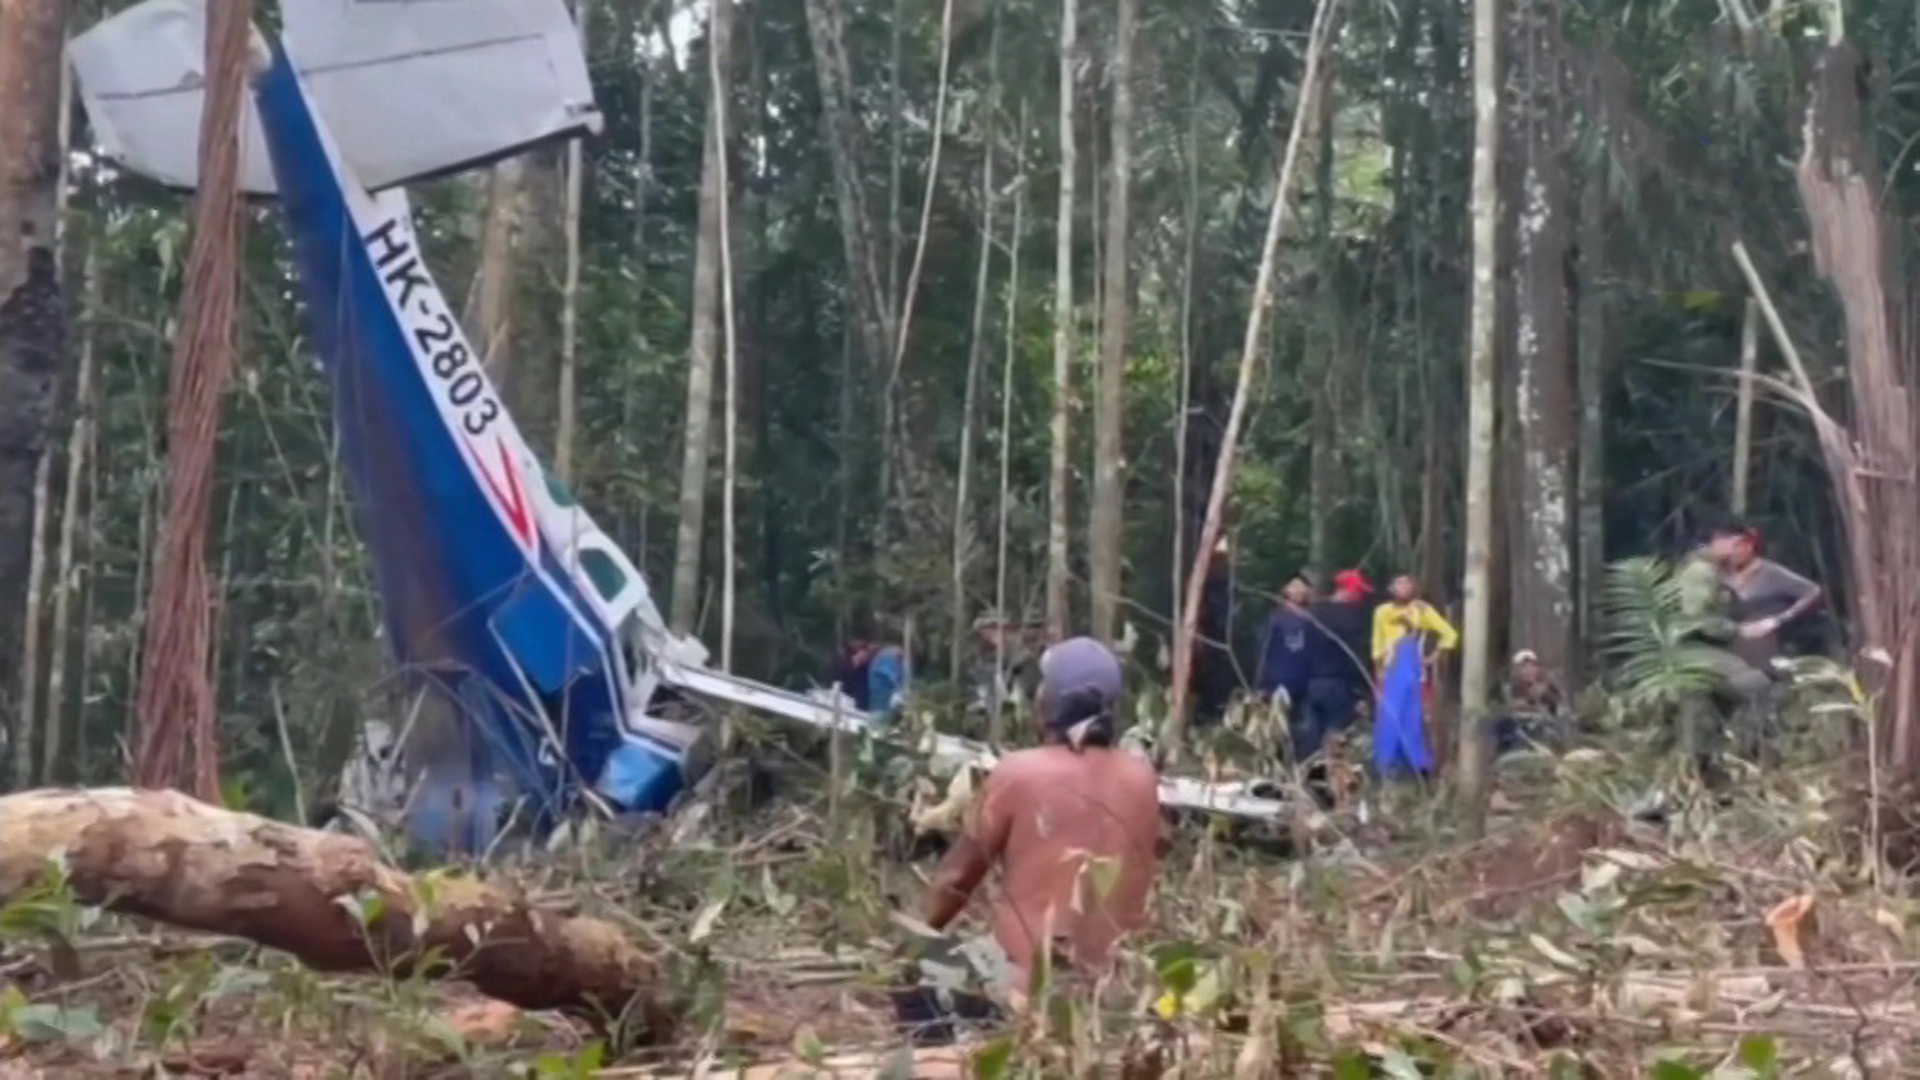 Мир после падения 117. Дети в джунглях Колумбия авиакатастрофа. В джунглях Колумбии упал самолет. Упавшие самолеты в джунглях. Авиакатастрофа в джунглях.